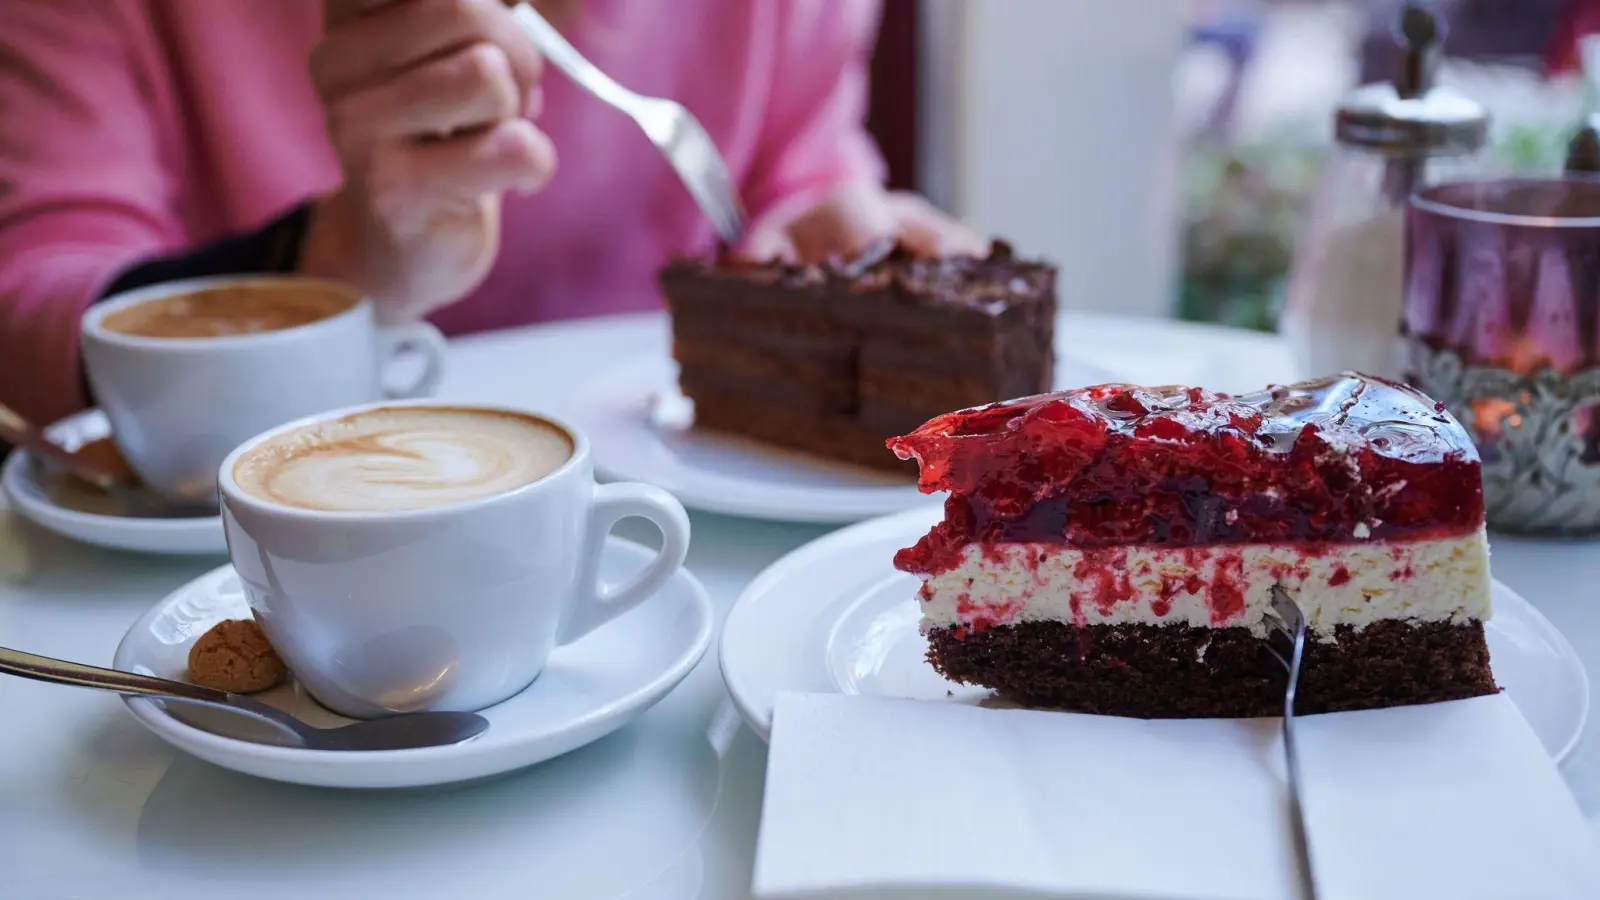 Die Nachmittagsmahlzeit mit Kaffee und Kuchen bleibt bei den Menschen in Deutschland beliebt. (Foto: Annette Riedl/dpa)